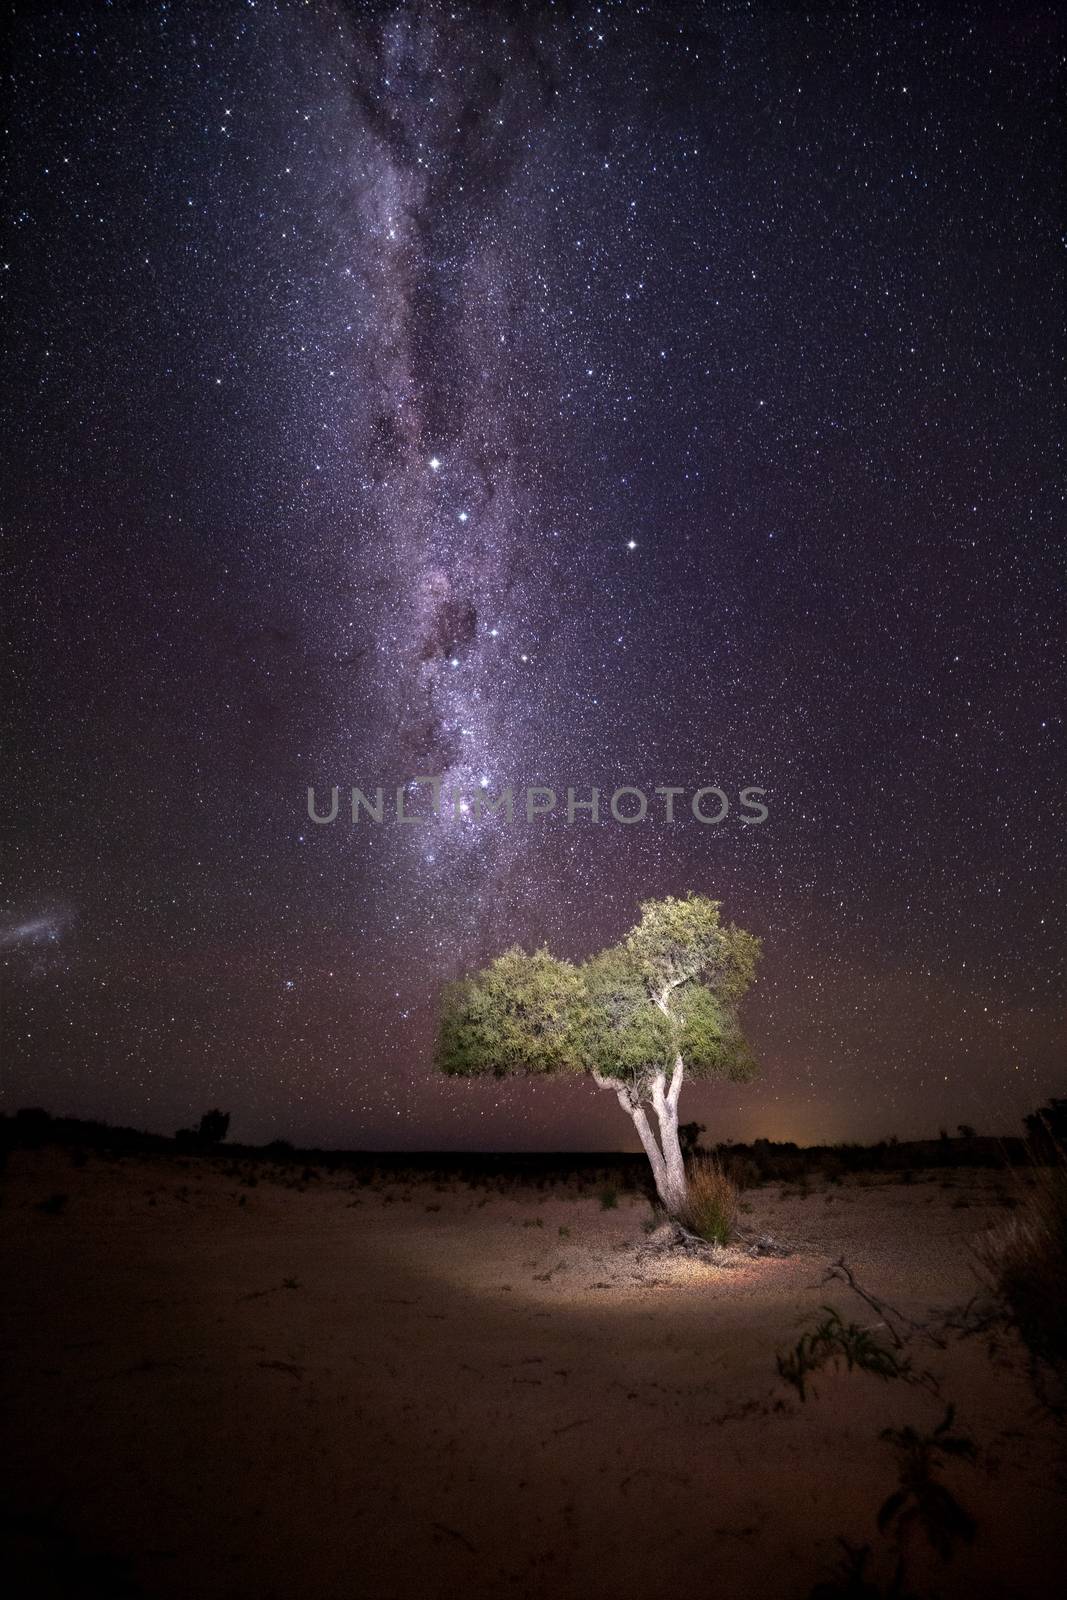 Illuminated tree under starry sky by lovleah